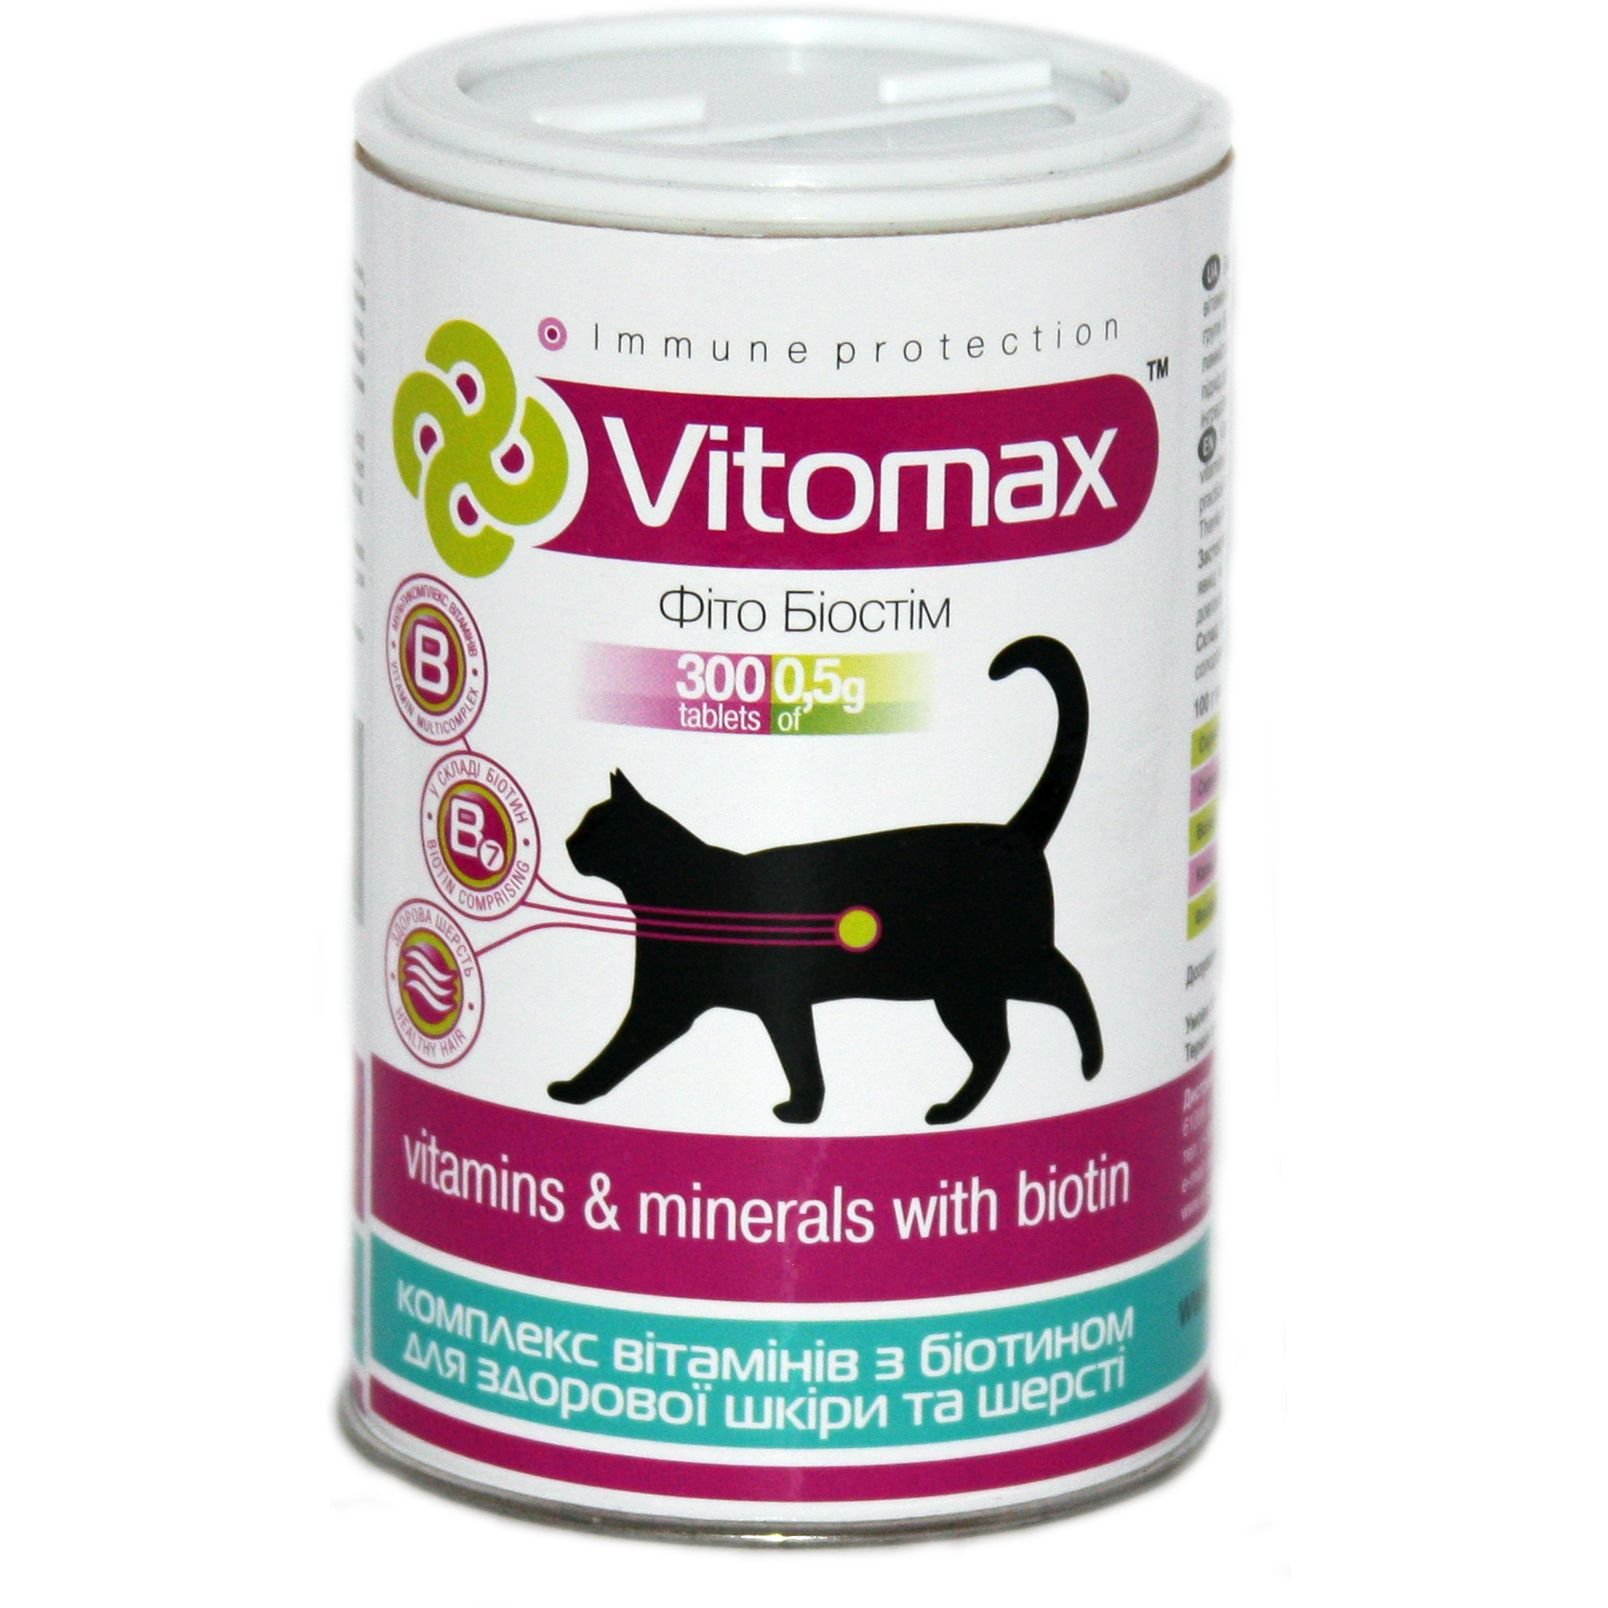 Вітаміни Vitomax з біотіном для здорової шкіри та шерсті для котів, 300 таблеток - фото 1